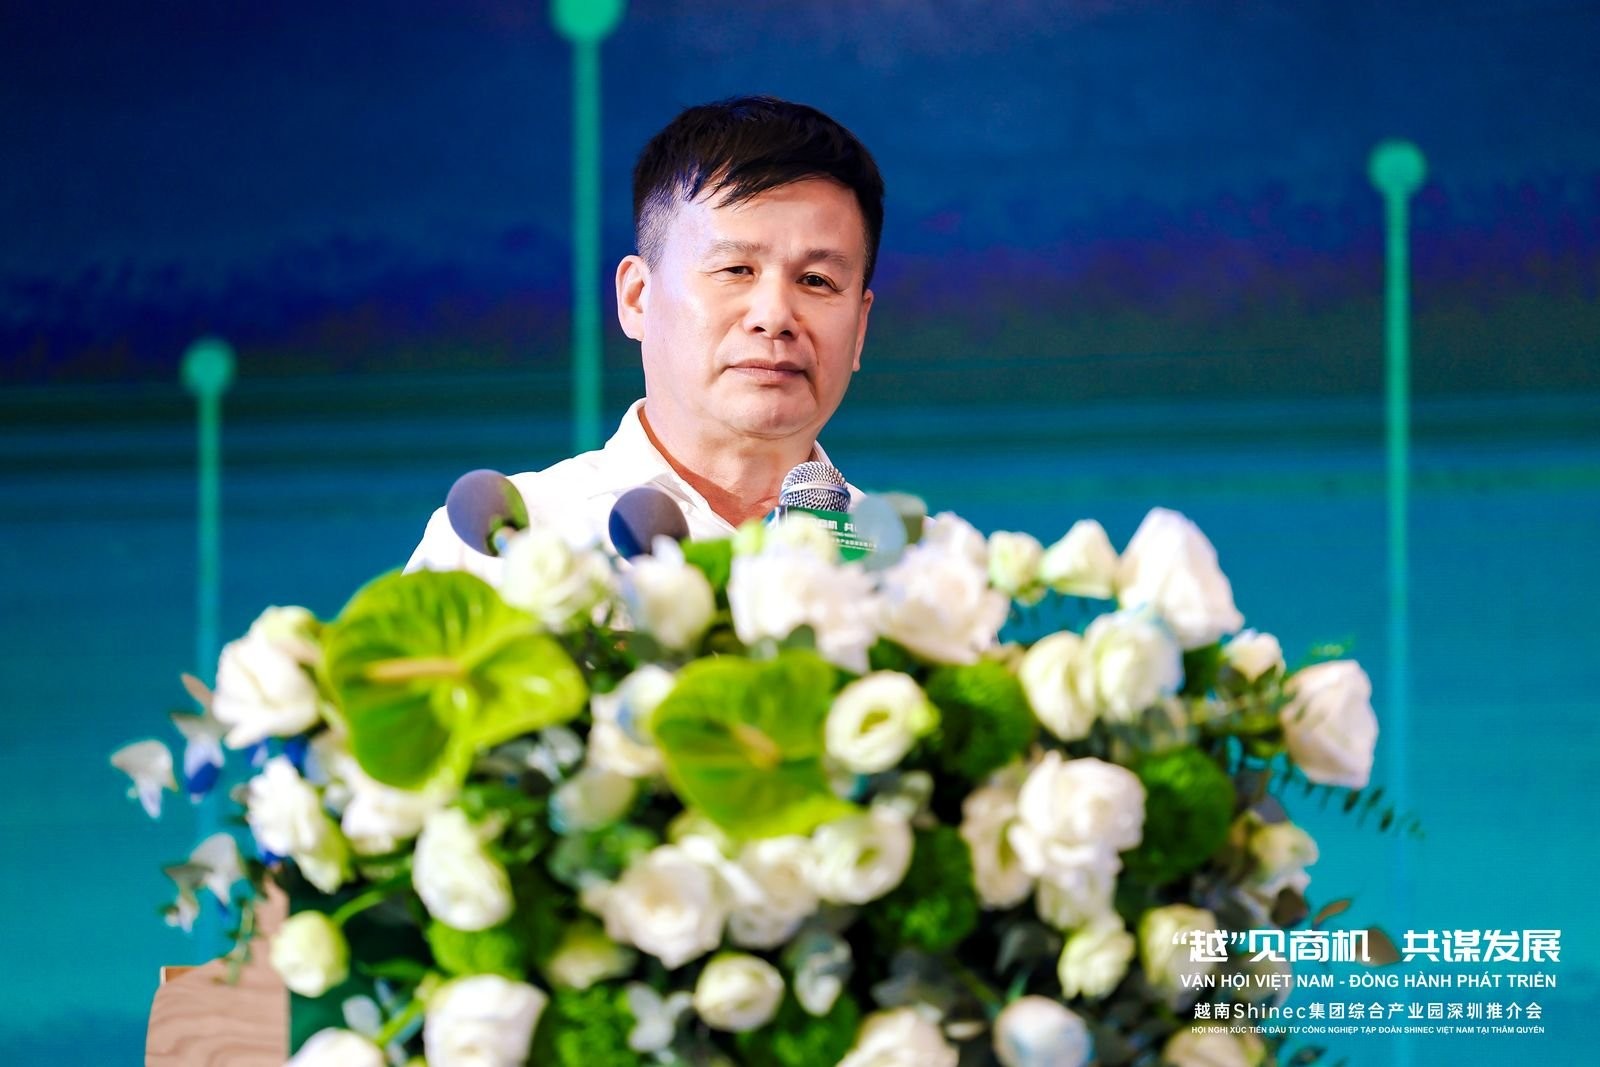 Ông Phạm Hồng Điệp - Chủ tịch HĐQT Công ty cổ phần Shinec phát biểu tại hội nghị.